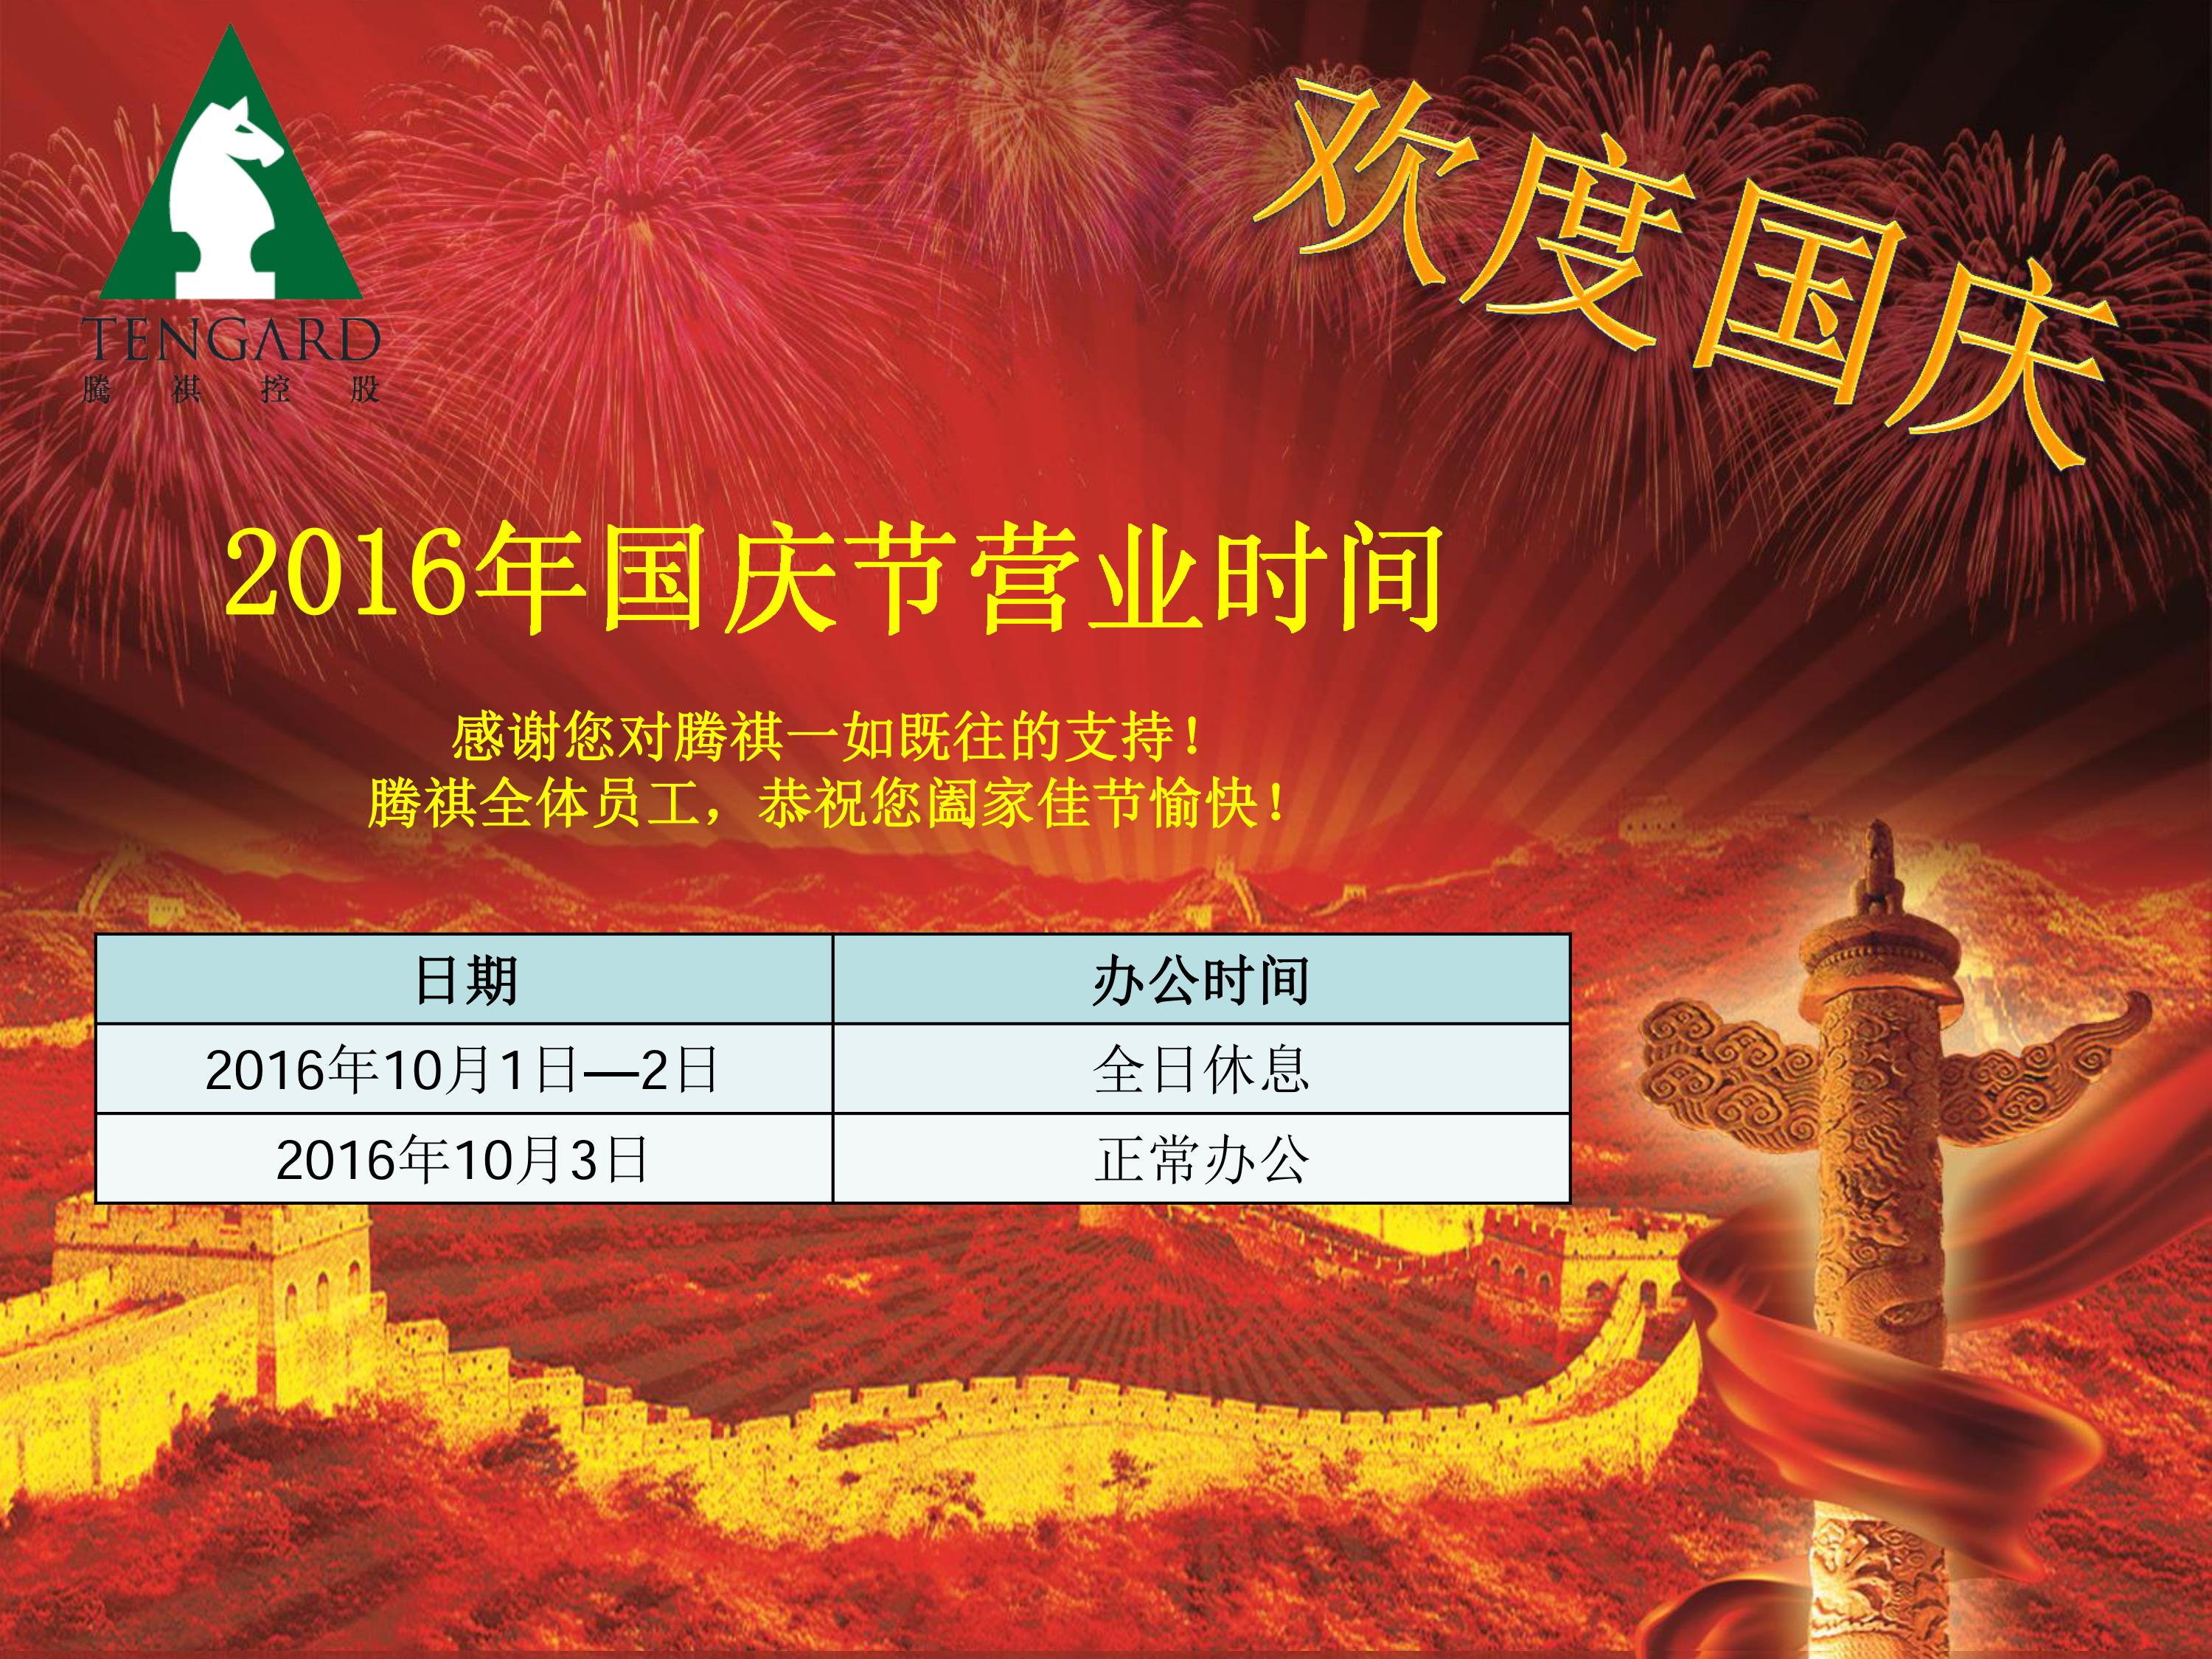 2016年国庆节营业时间安排